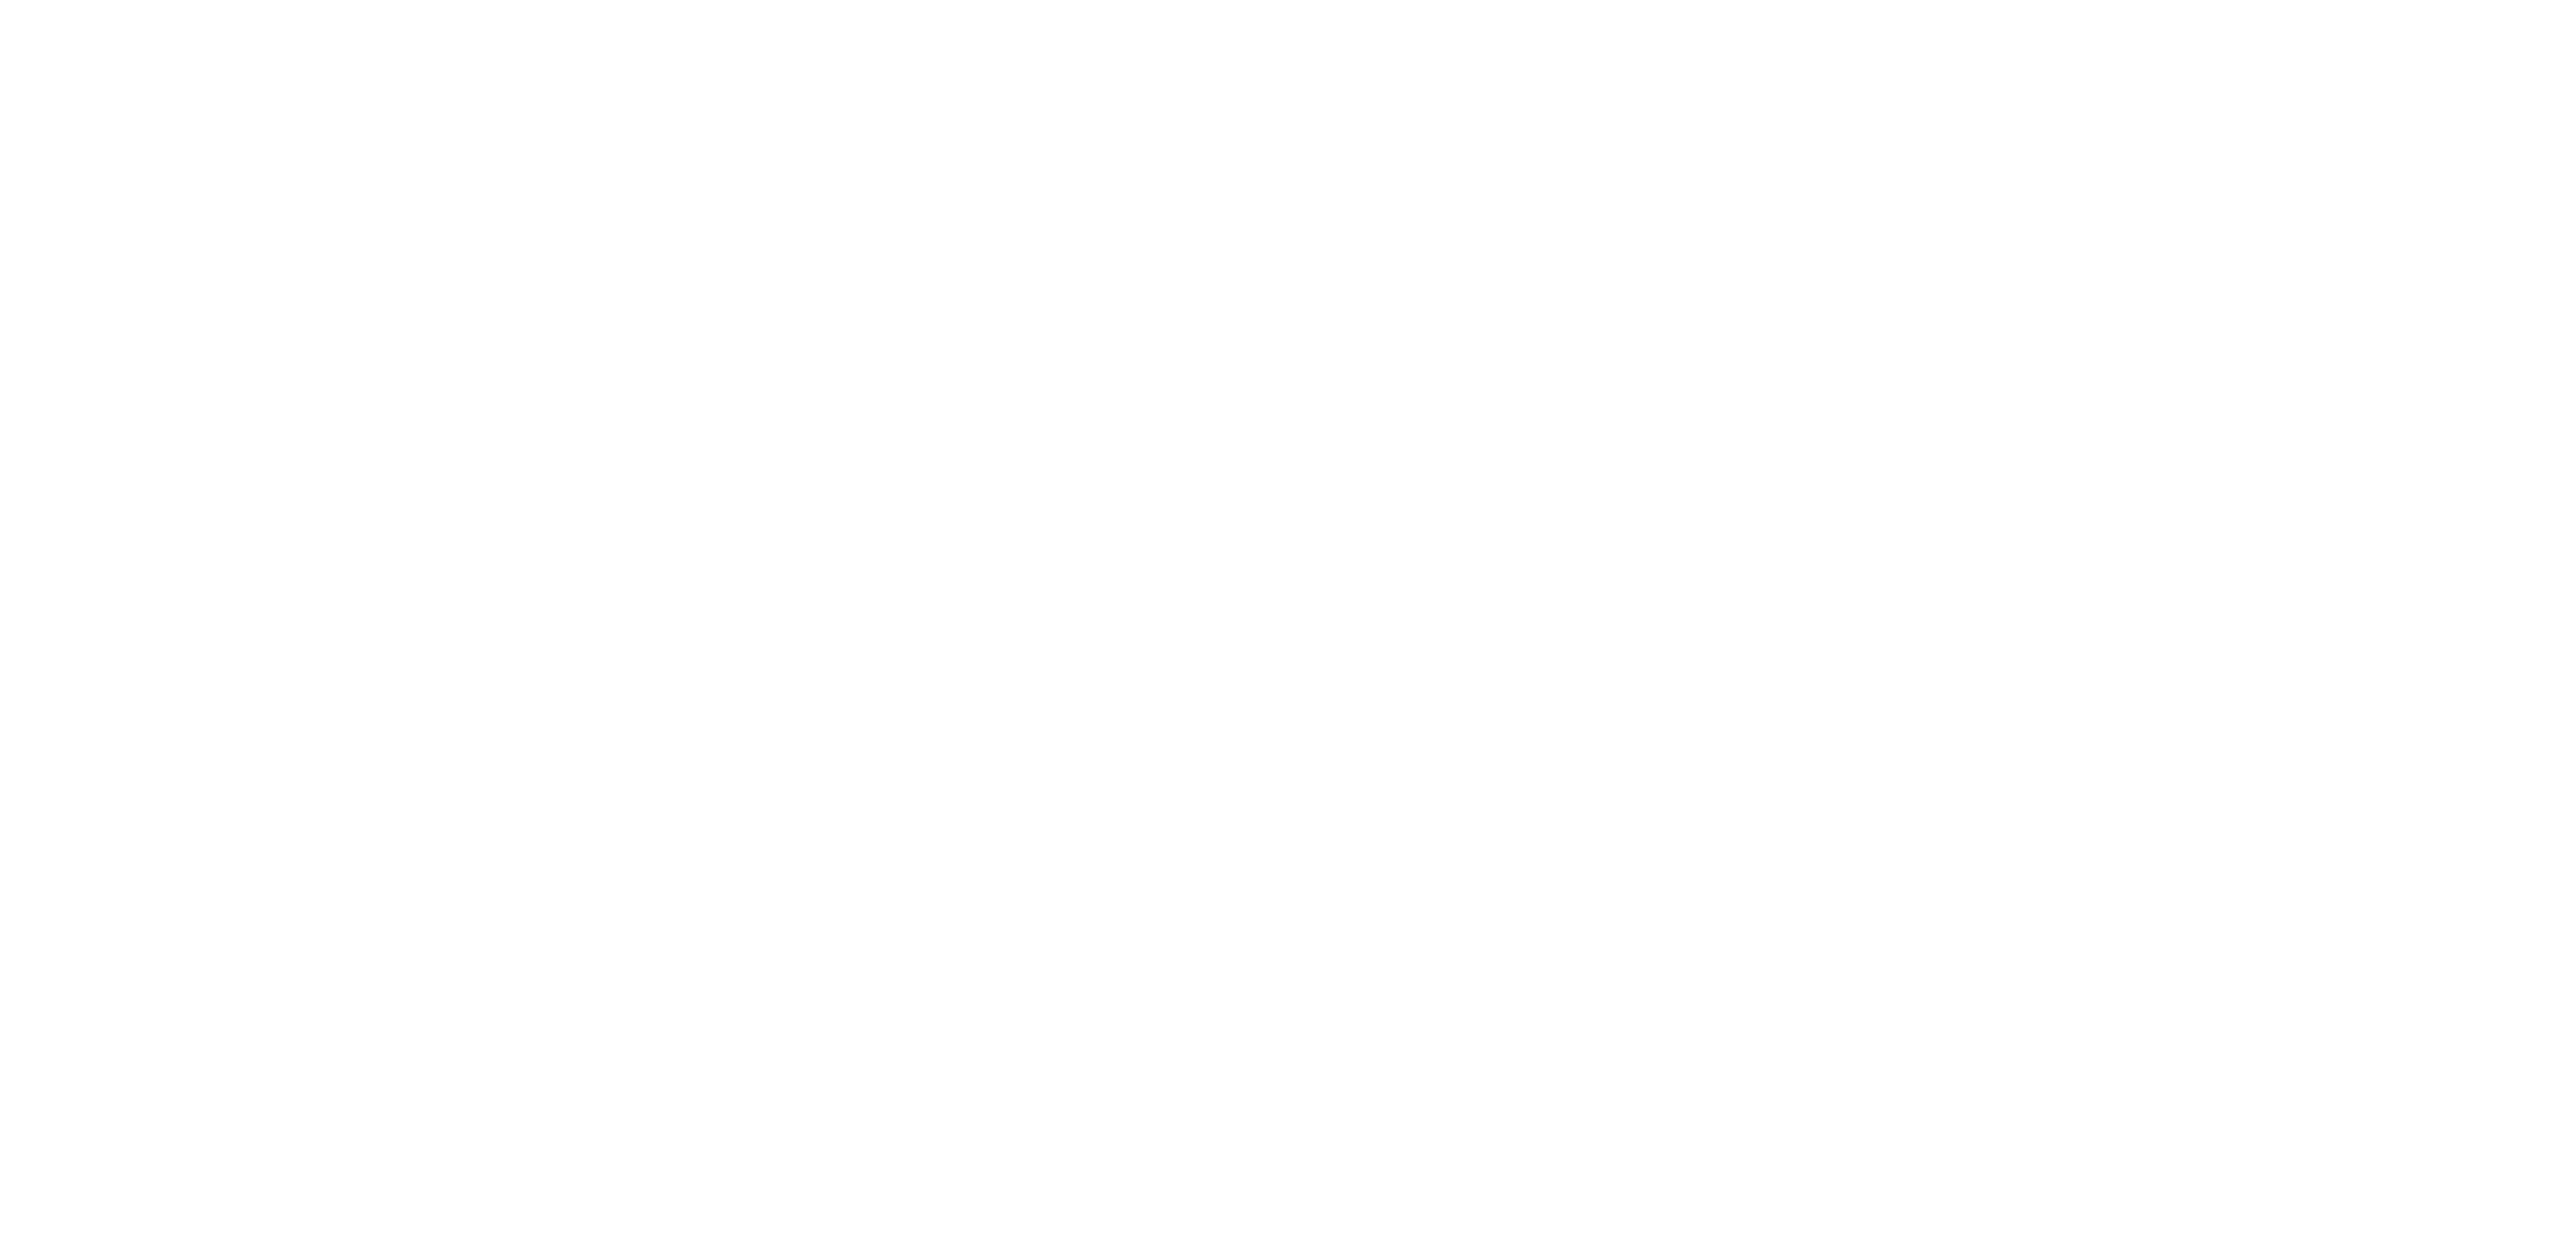 Thinkers & Doers co.Company Logo